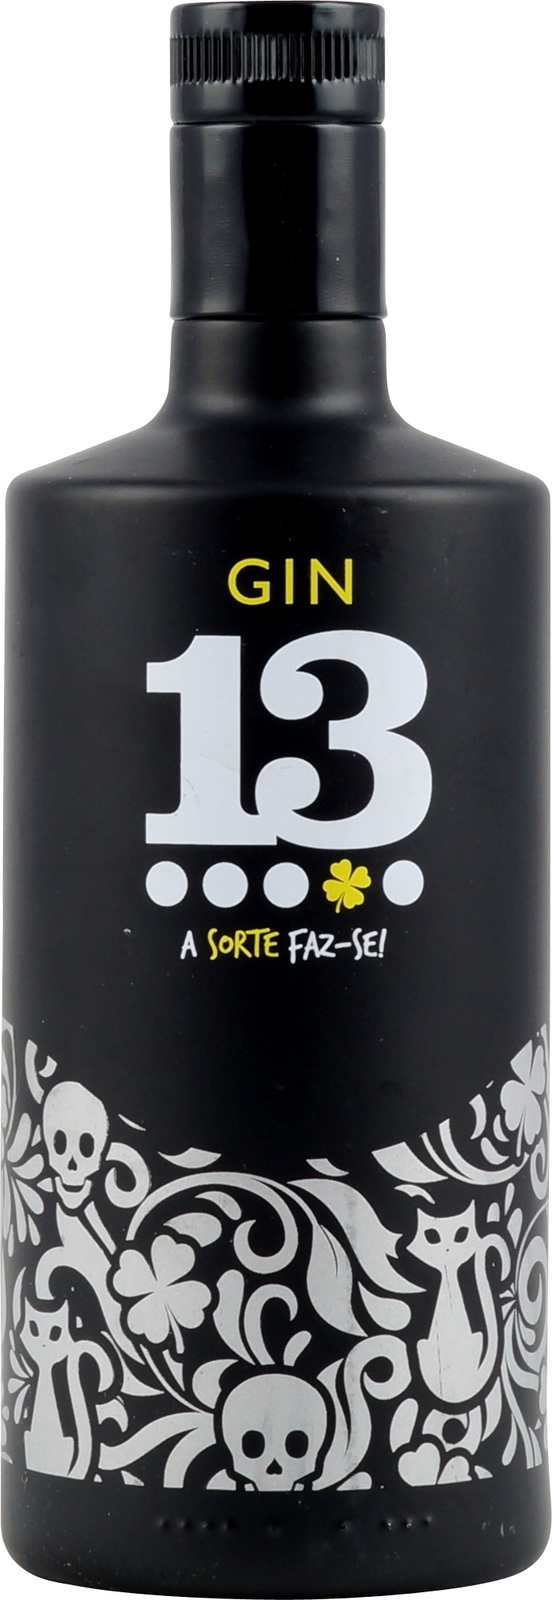 Gin 13 aus Portugal hier im Onlineshop verfügbar